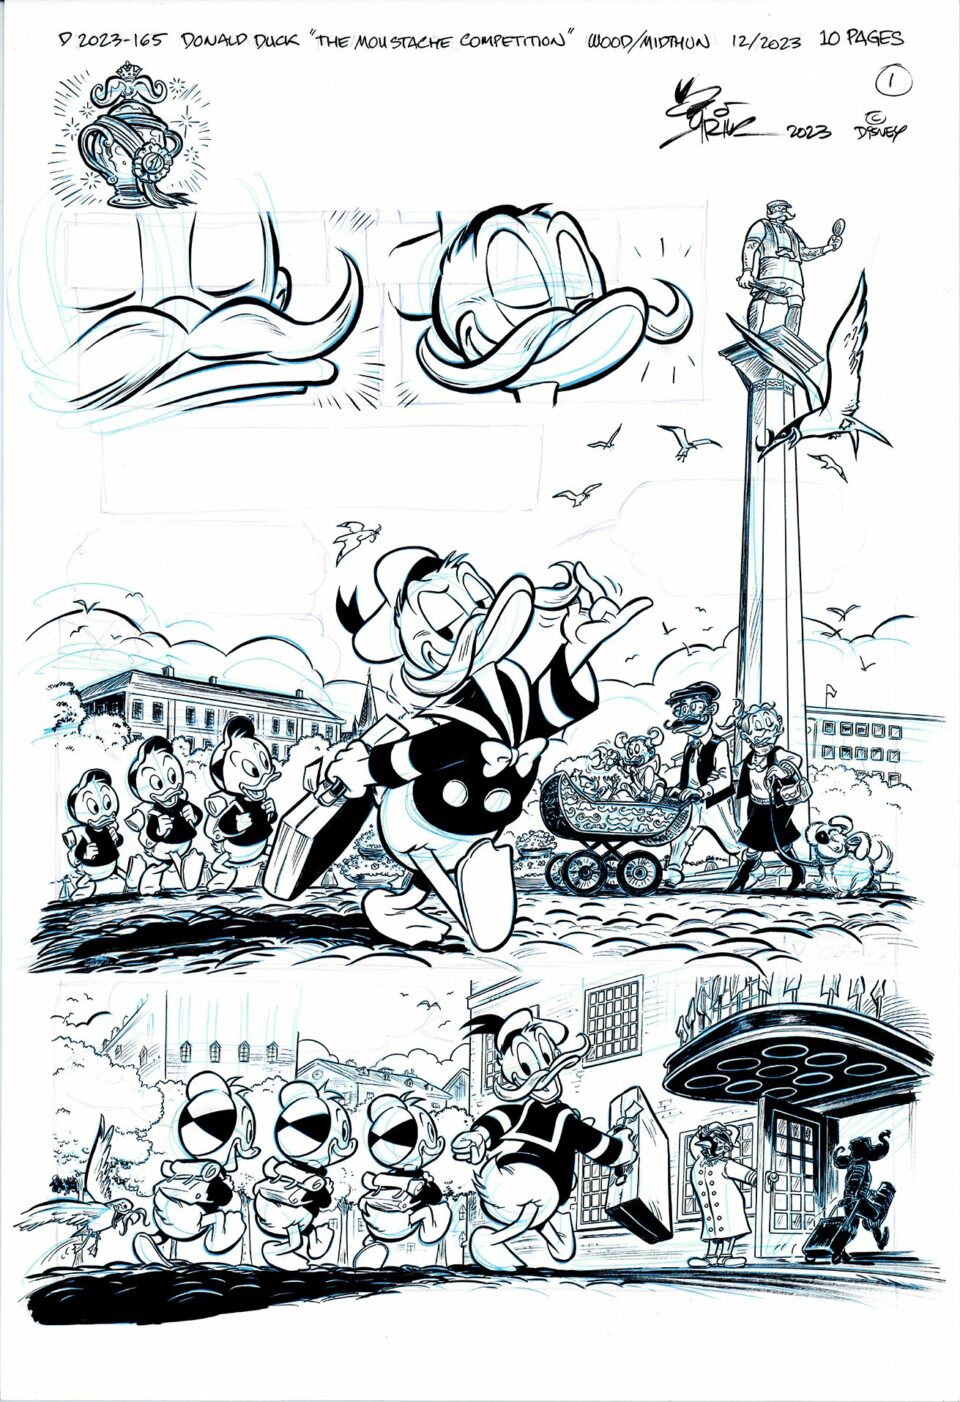 Tegneserieside med Donald Duck og andre karakterer i forskjellige scener, inkludert en bartekonkurranse og avduking av en statue.